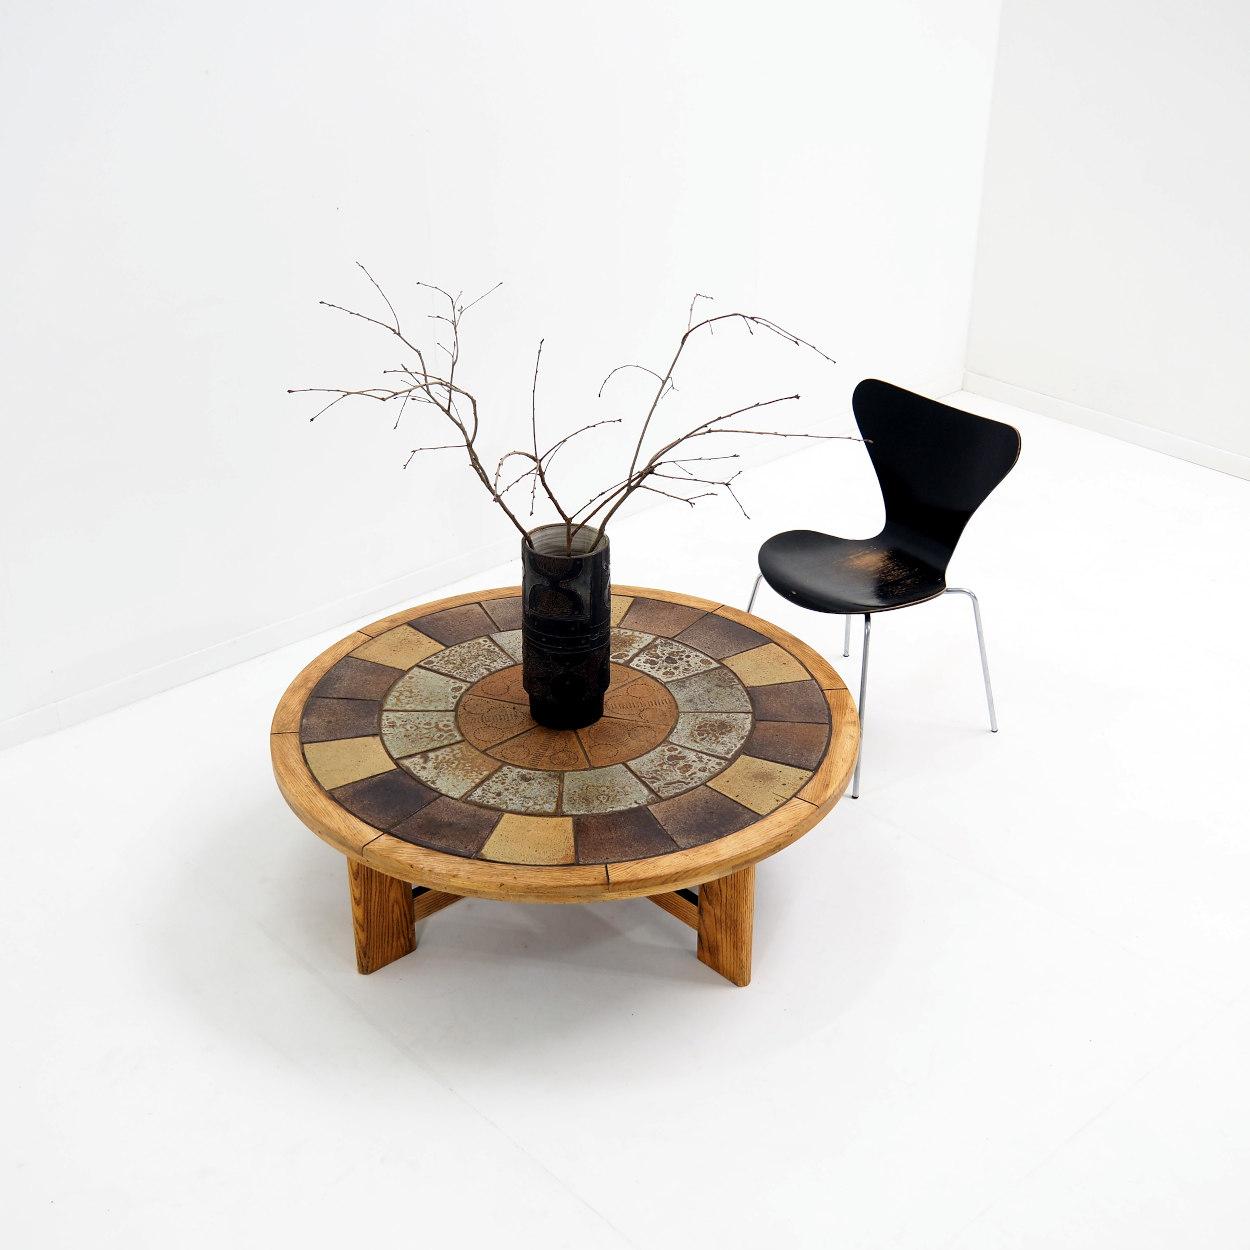 Table basse très solide avec une architecture forte et basique. La table est conçue par l'artiste designer danois Tue Poulsen pour Haslev Mobelsnedkeri, un fabricant danois.

La table a été fabriquée dans les années 1960 avec des carreaux de